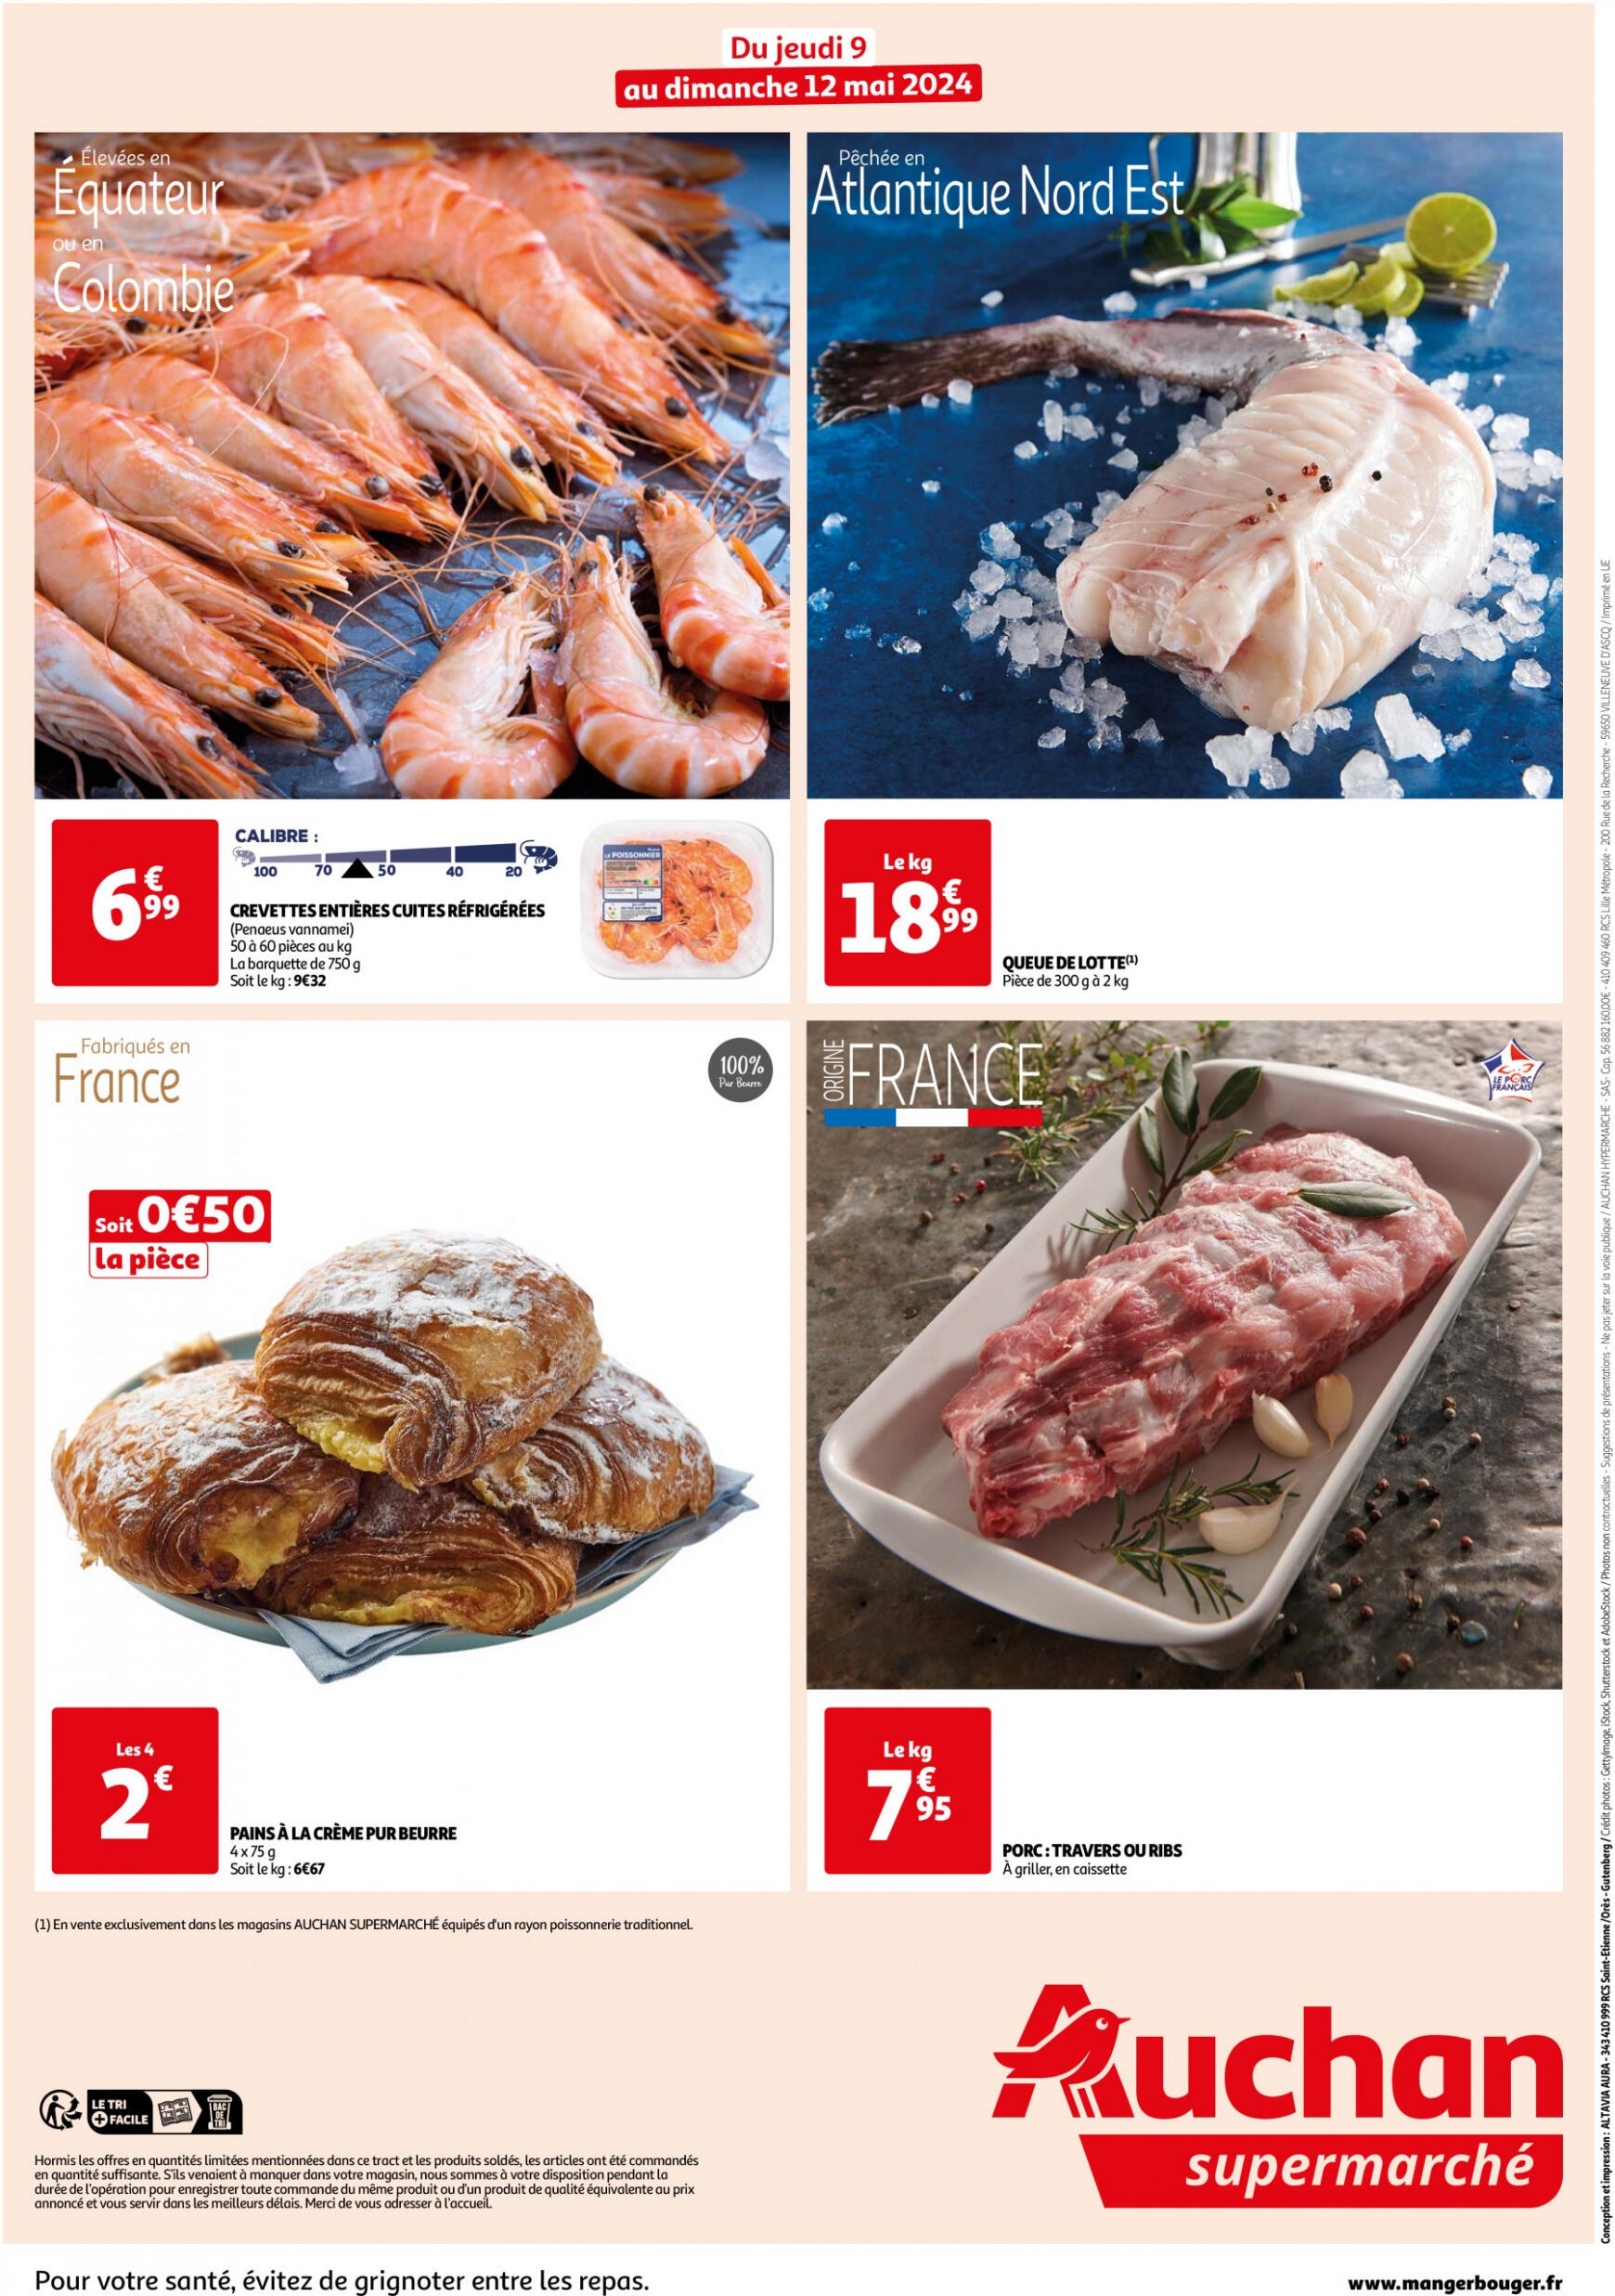 auchan - Prospectus Auchan Supermarché - Les bons plans du week-end dans votre super ! actuel 09.05. - 12.05. - page: 2